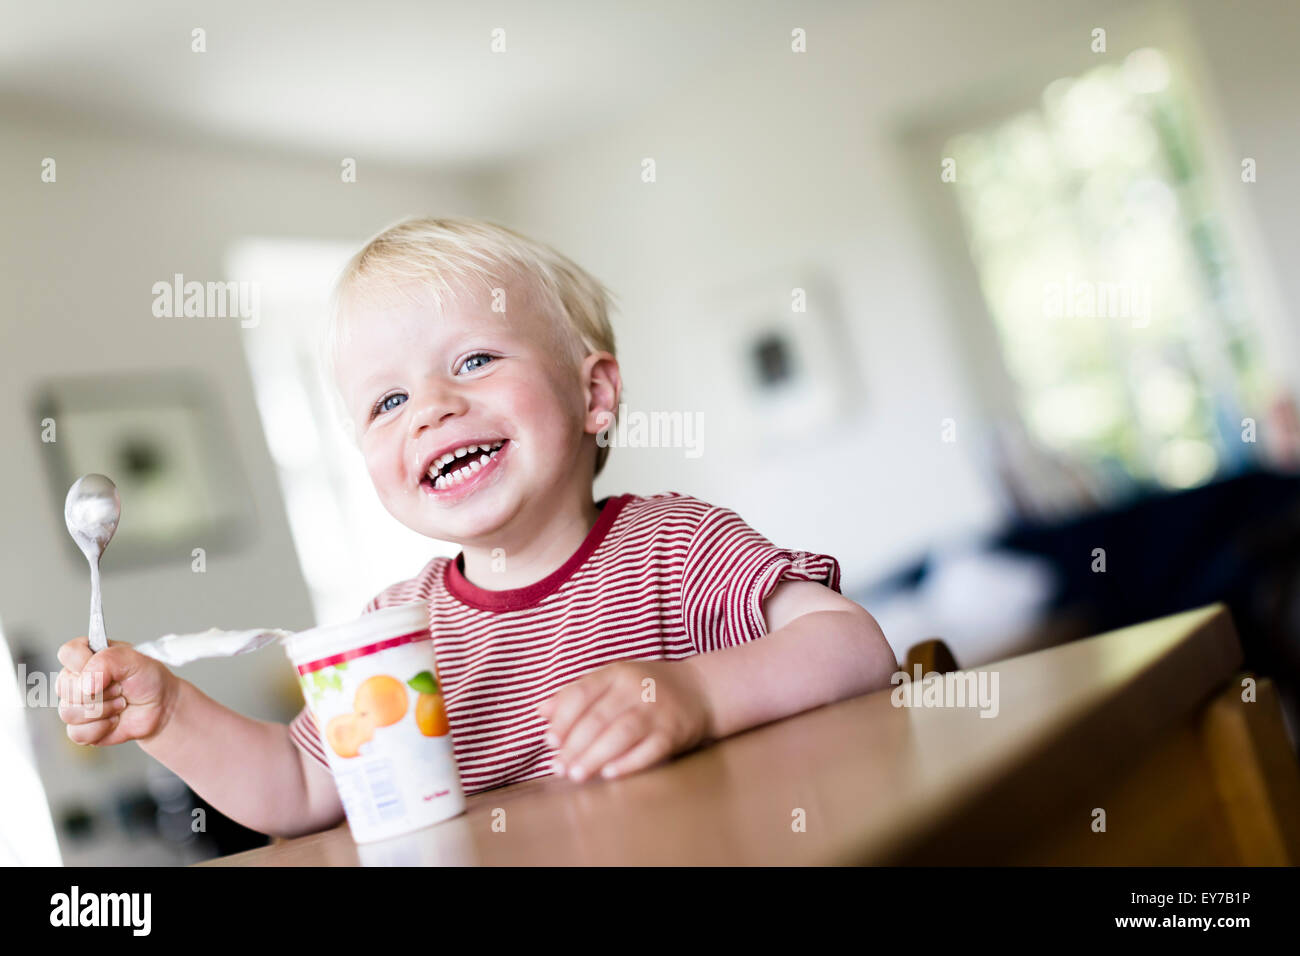 Jeune garçon, 2 ans, manger heureusement un yaourt. Banque D'Images